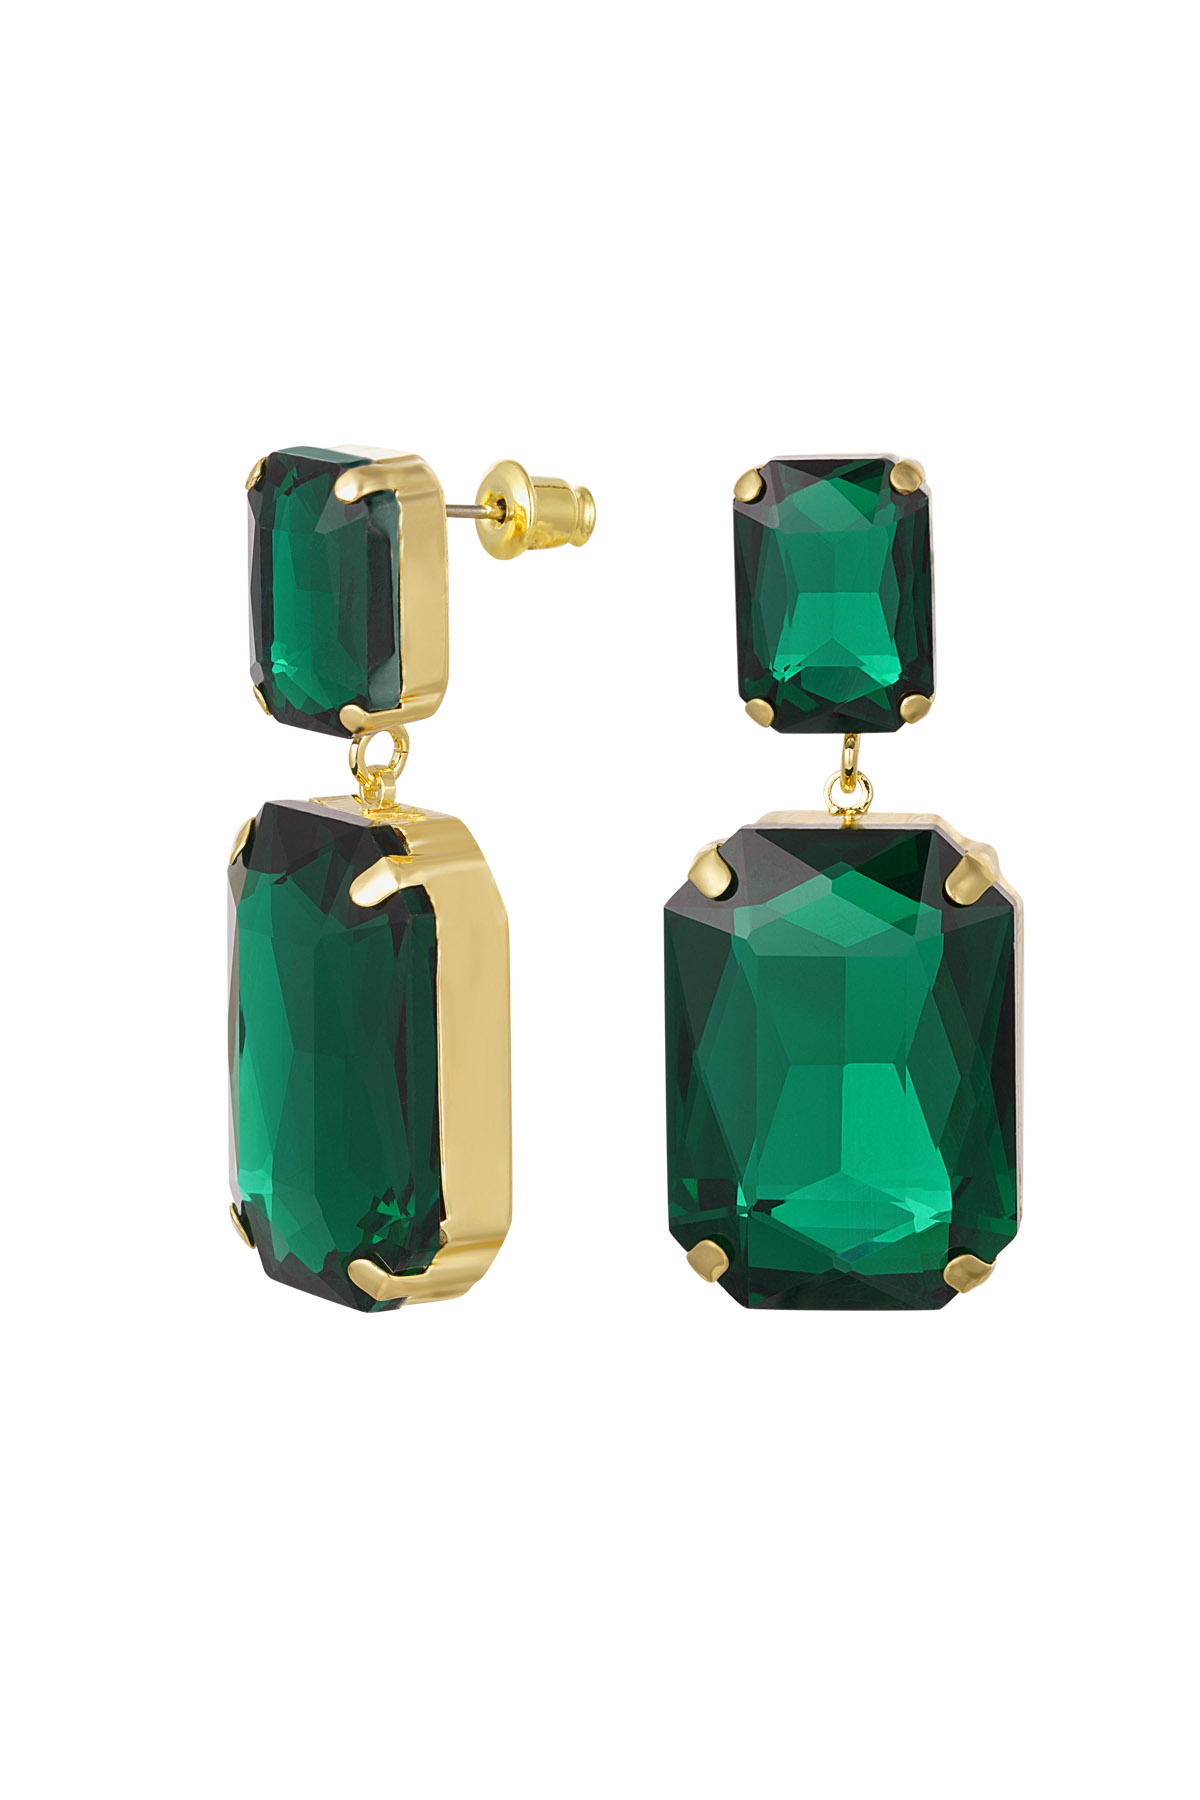 Pendientes 2 perlas de vidrio - verde y dorado Perlas de vidrio